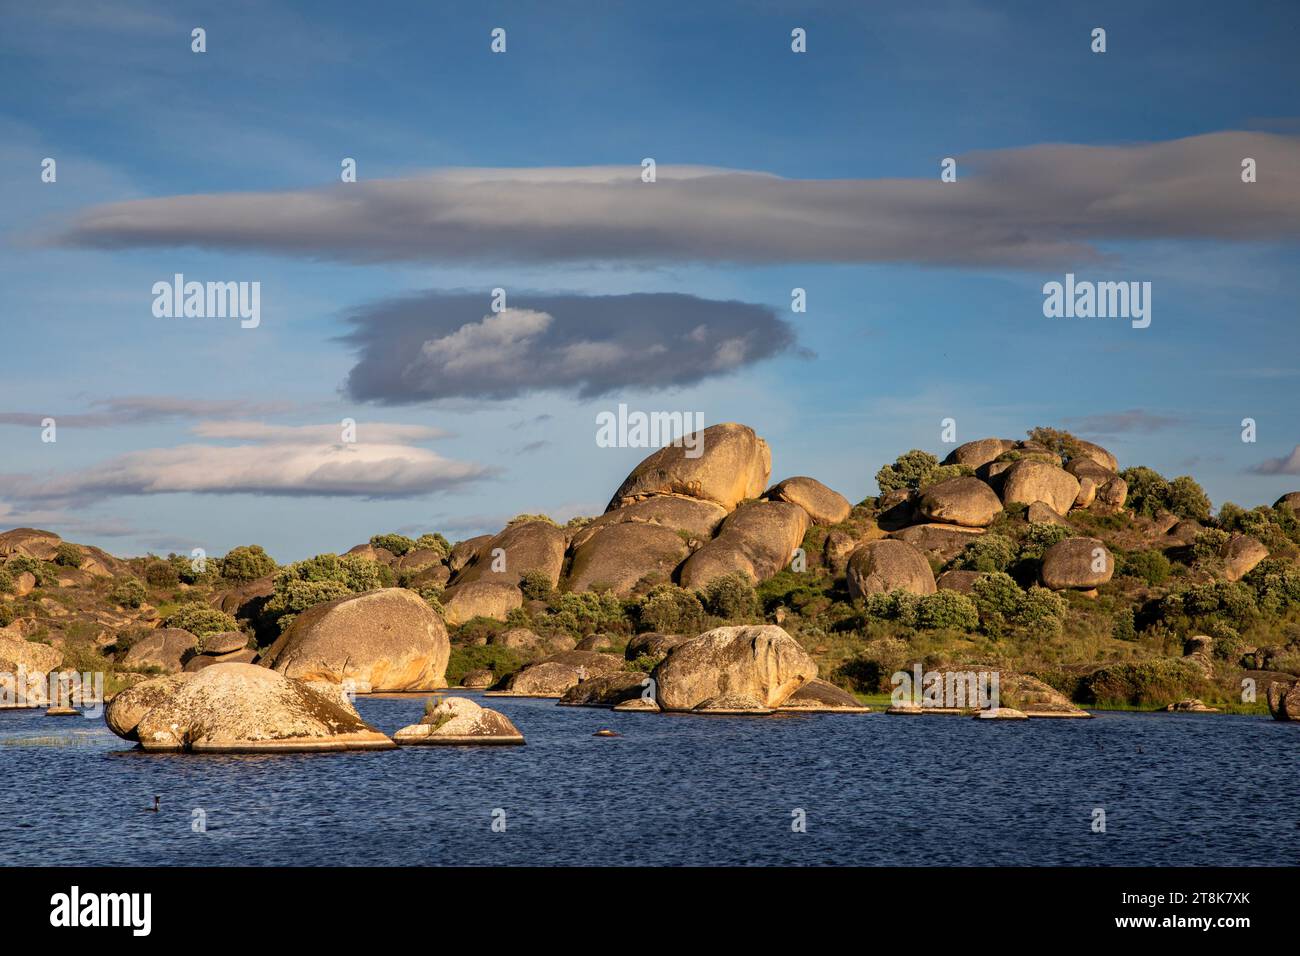 Monumento naturale di Los Barruecos, rocce di granito presso il bacino idrico di Arroyo del Tocon, Spagna, Malpartida de Caceres Foto Stock